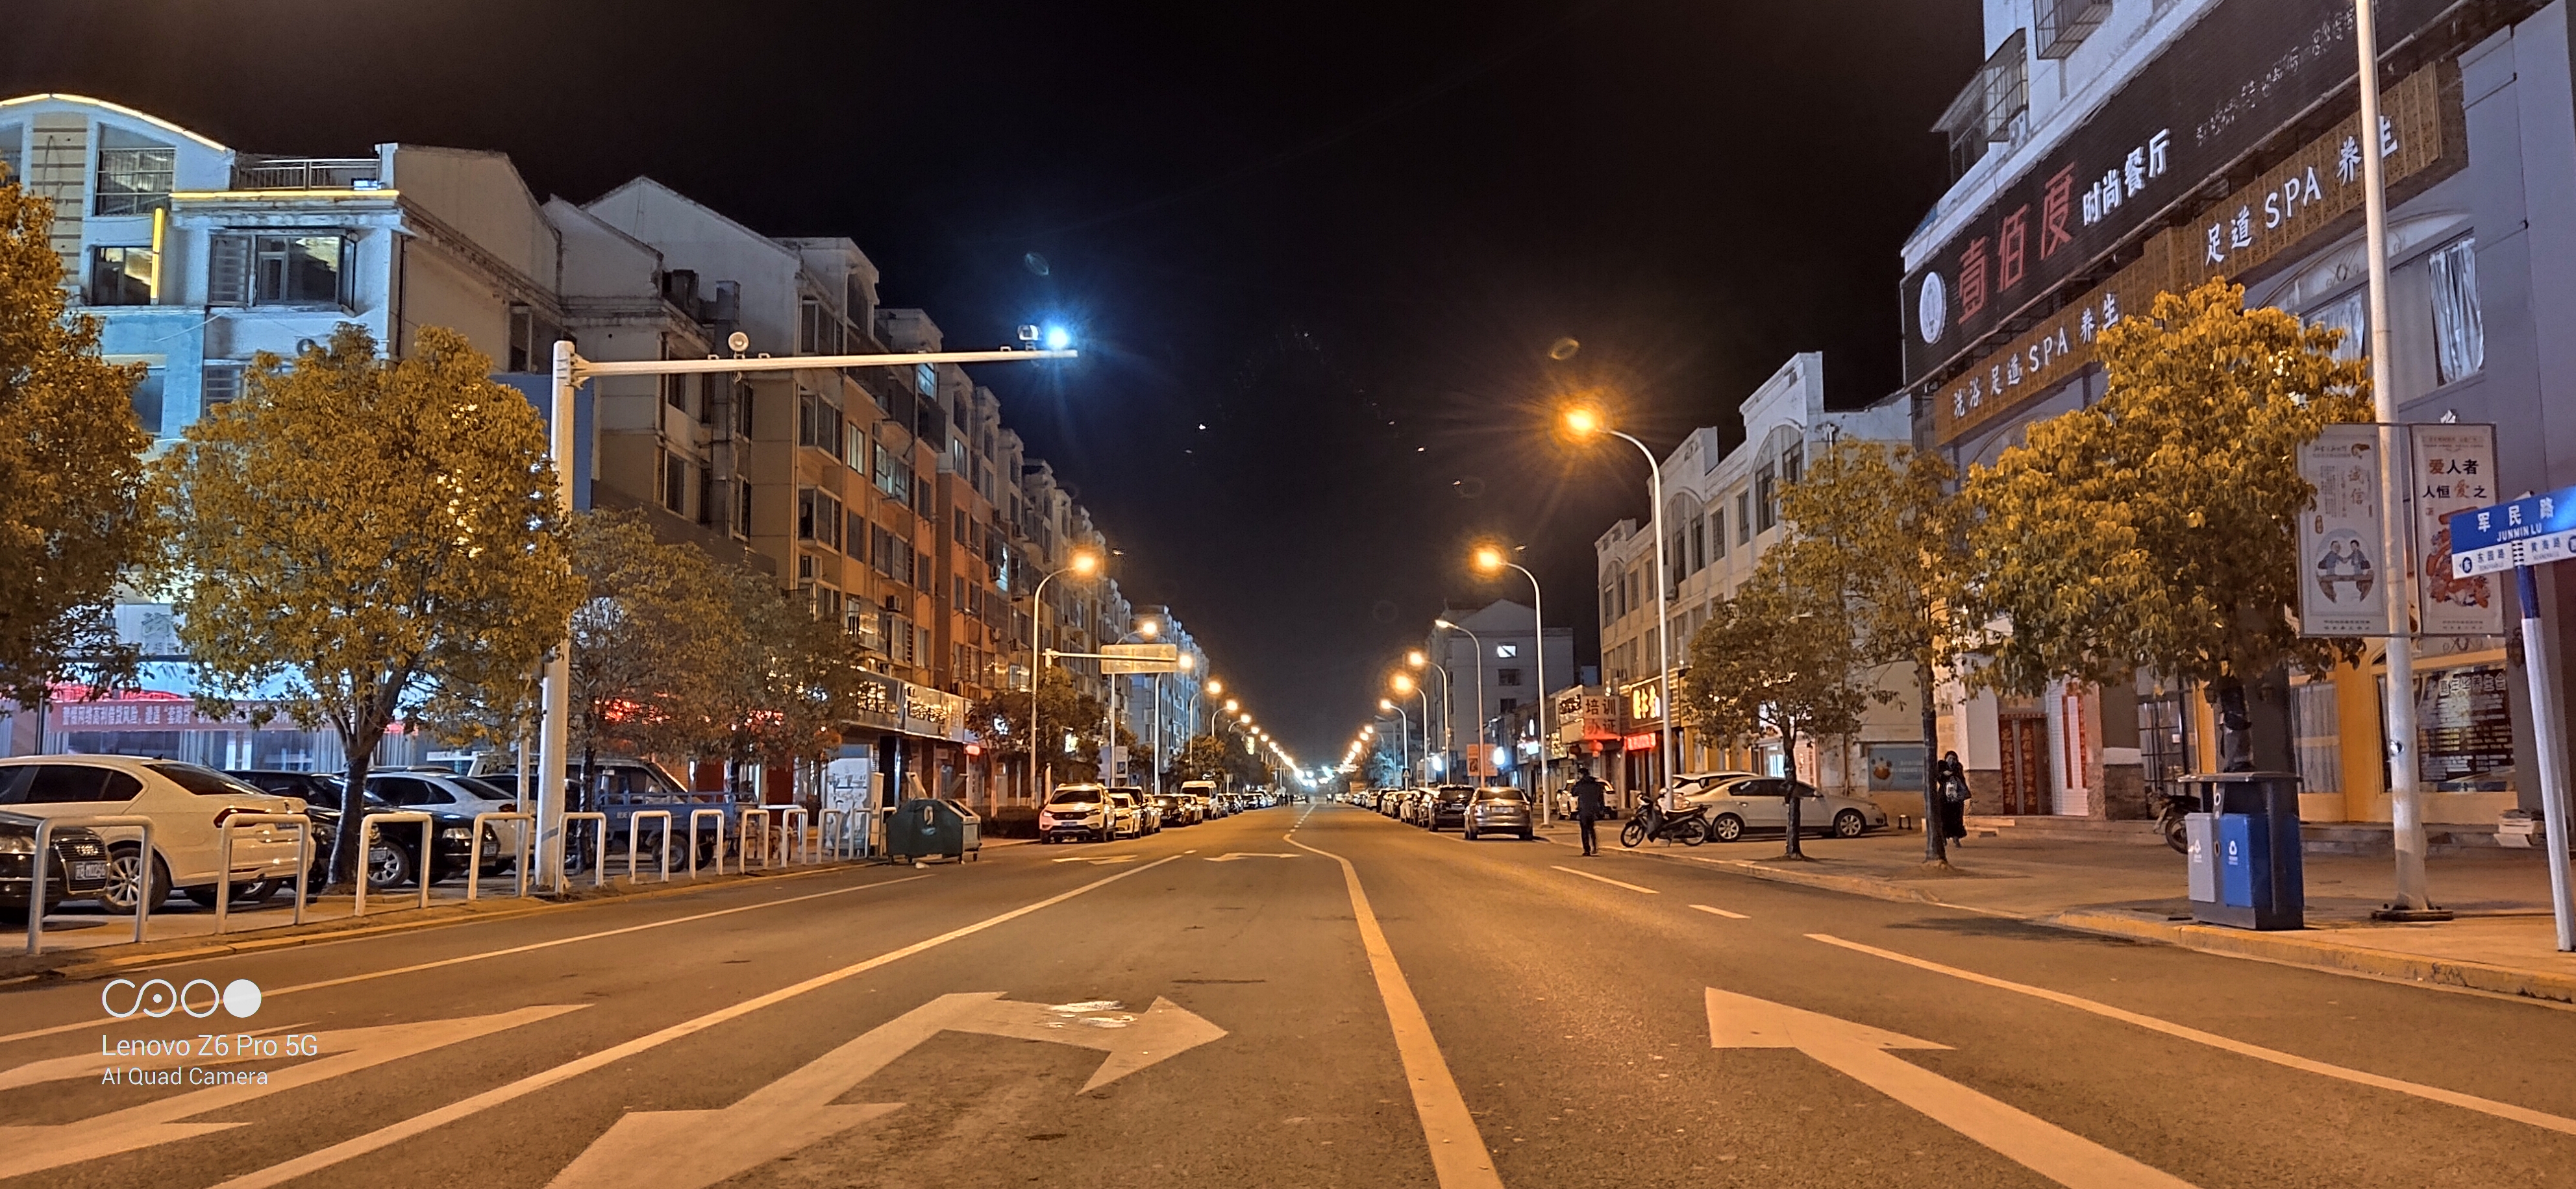 街边夜景 街道图片